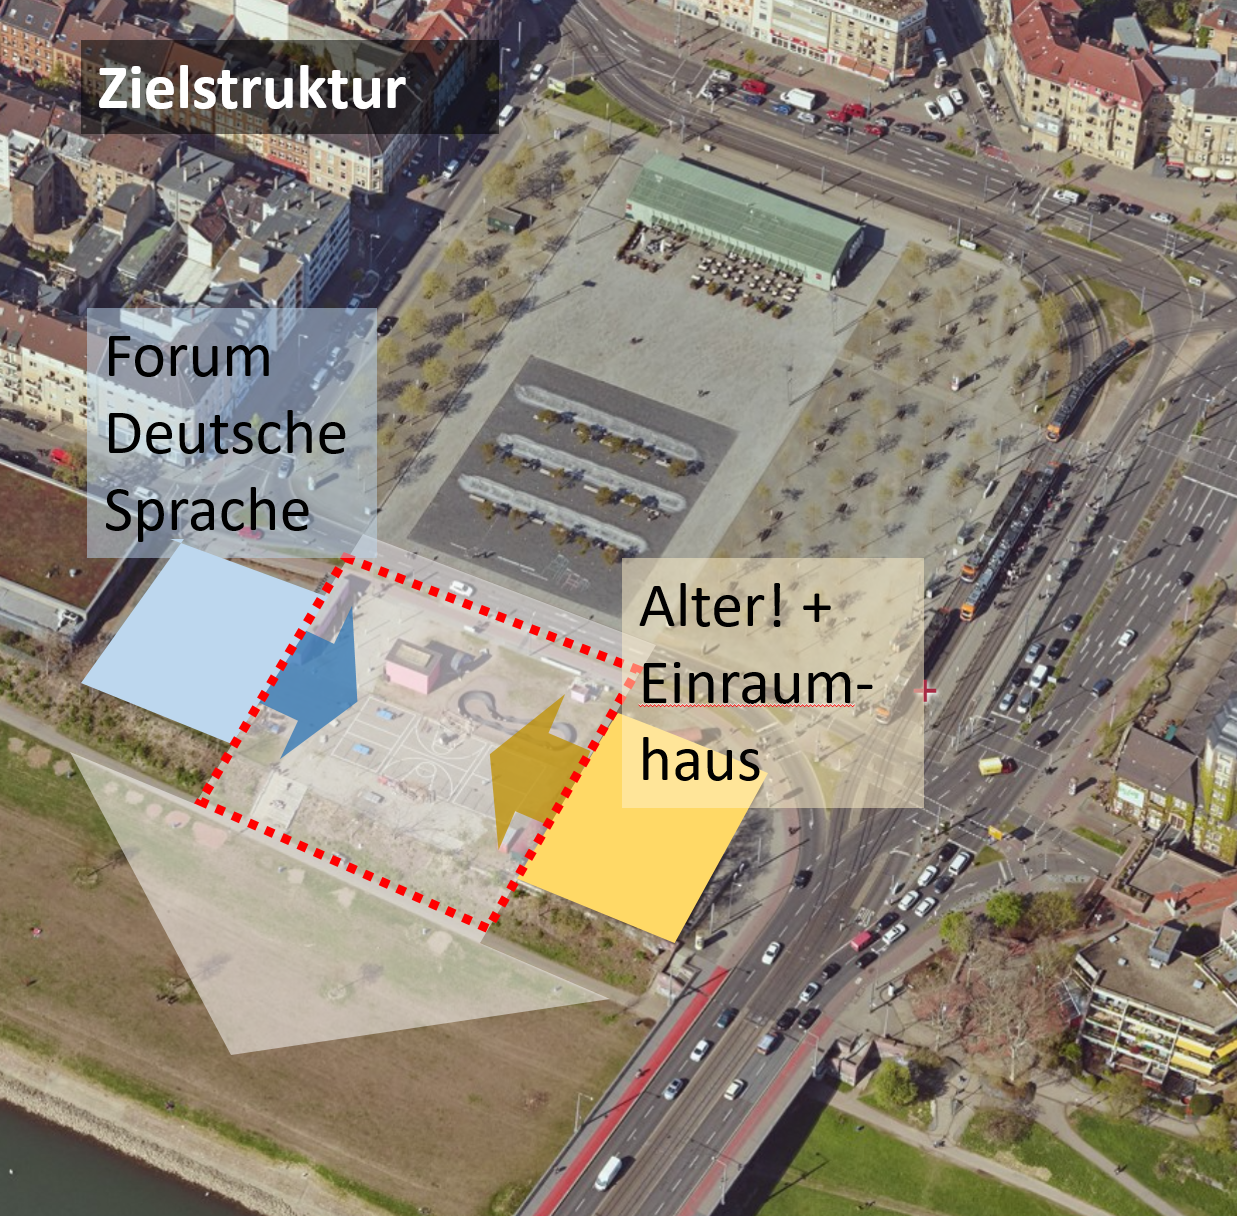 Luftbilder © Landesamt für Geoinformation und Landentwicklung